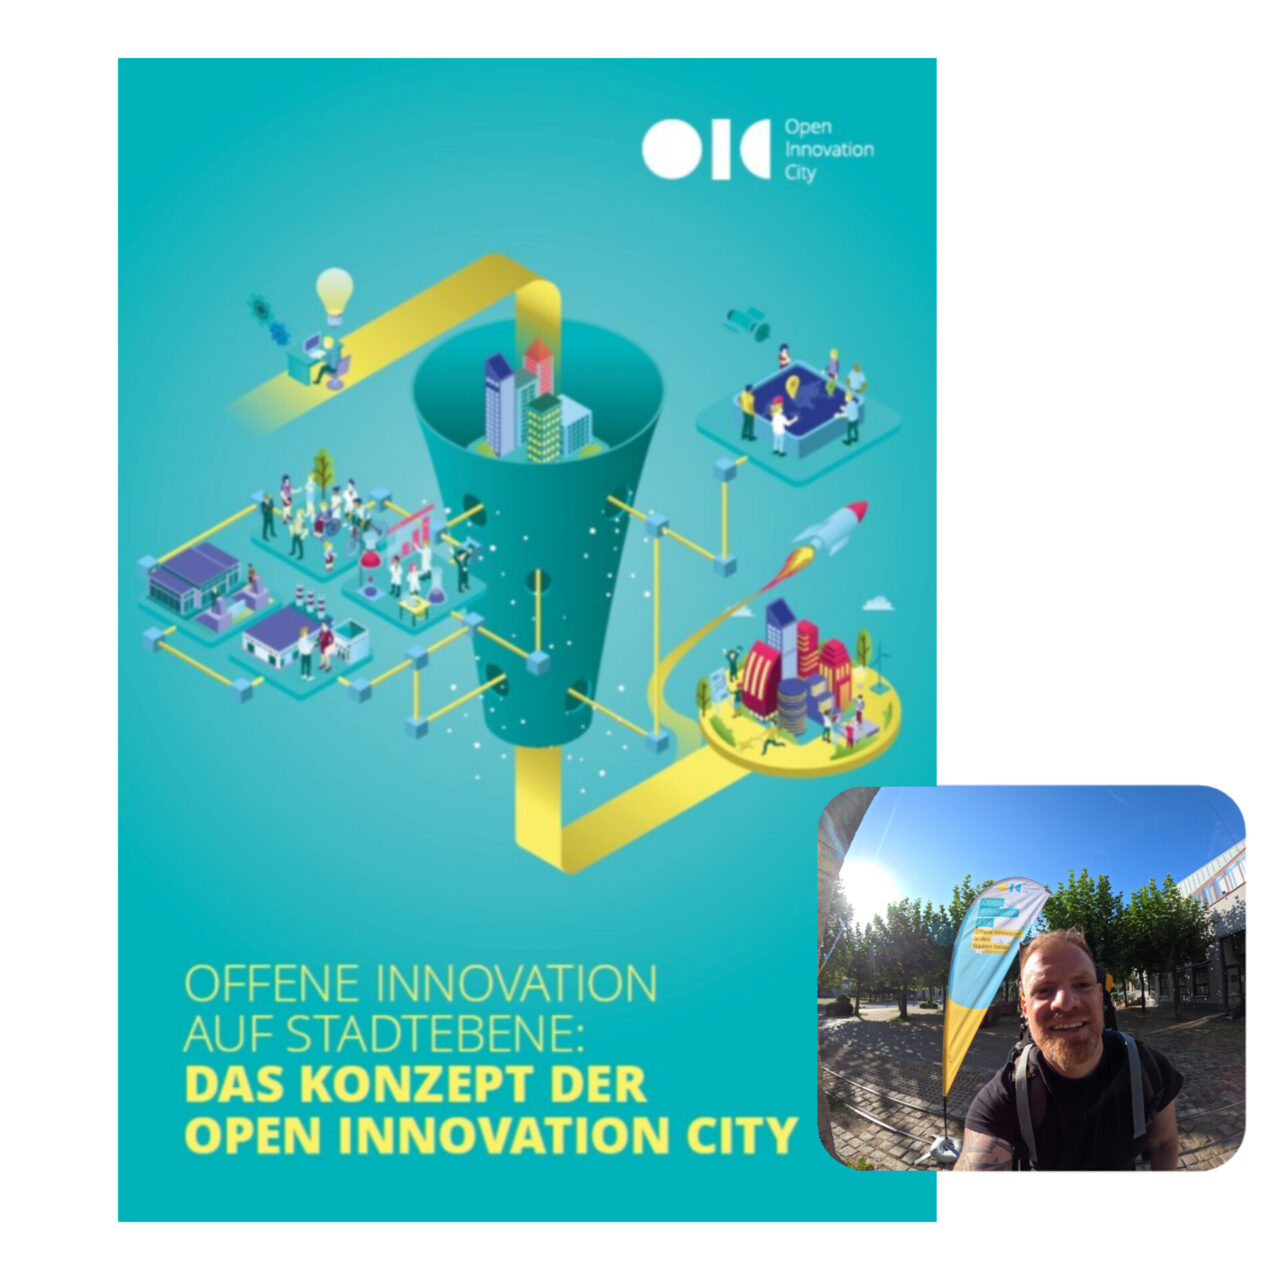 Das Bild zeigt eine Veranschaulichung des Titels "Offene Innovationen auf Stadtebene: Das Konzept der Open Innovation City" und ein Bild von Heiko Kolz vor der gleichnamigen Eventflagge